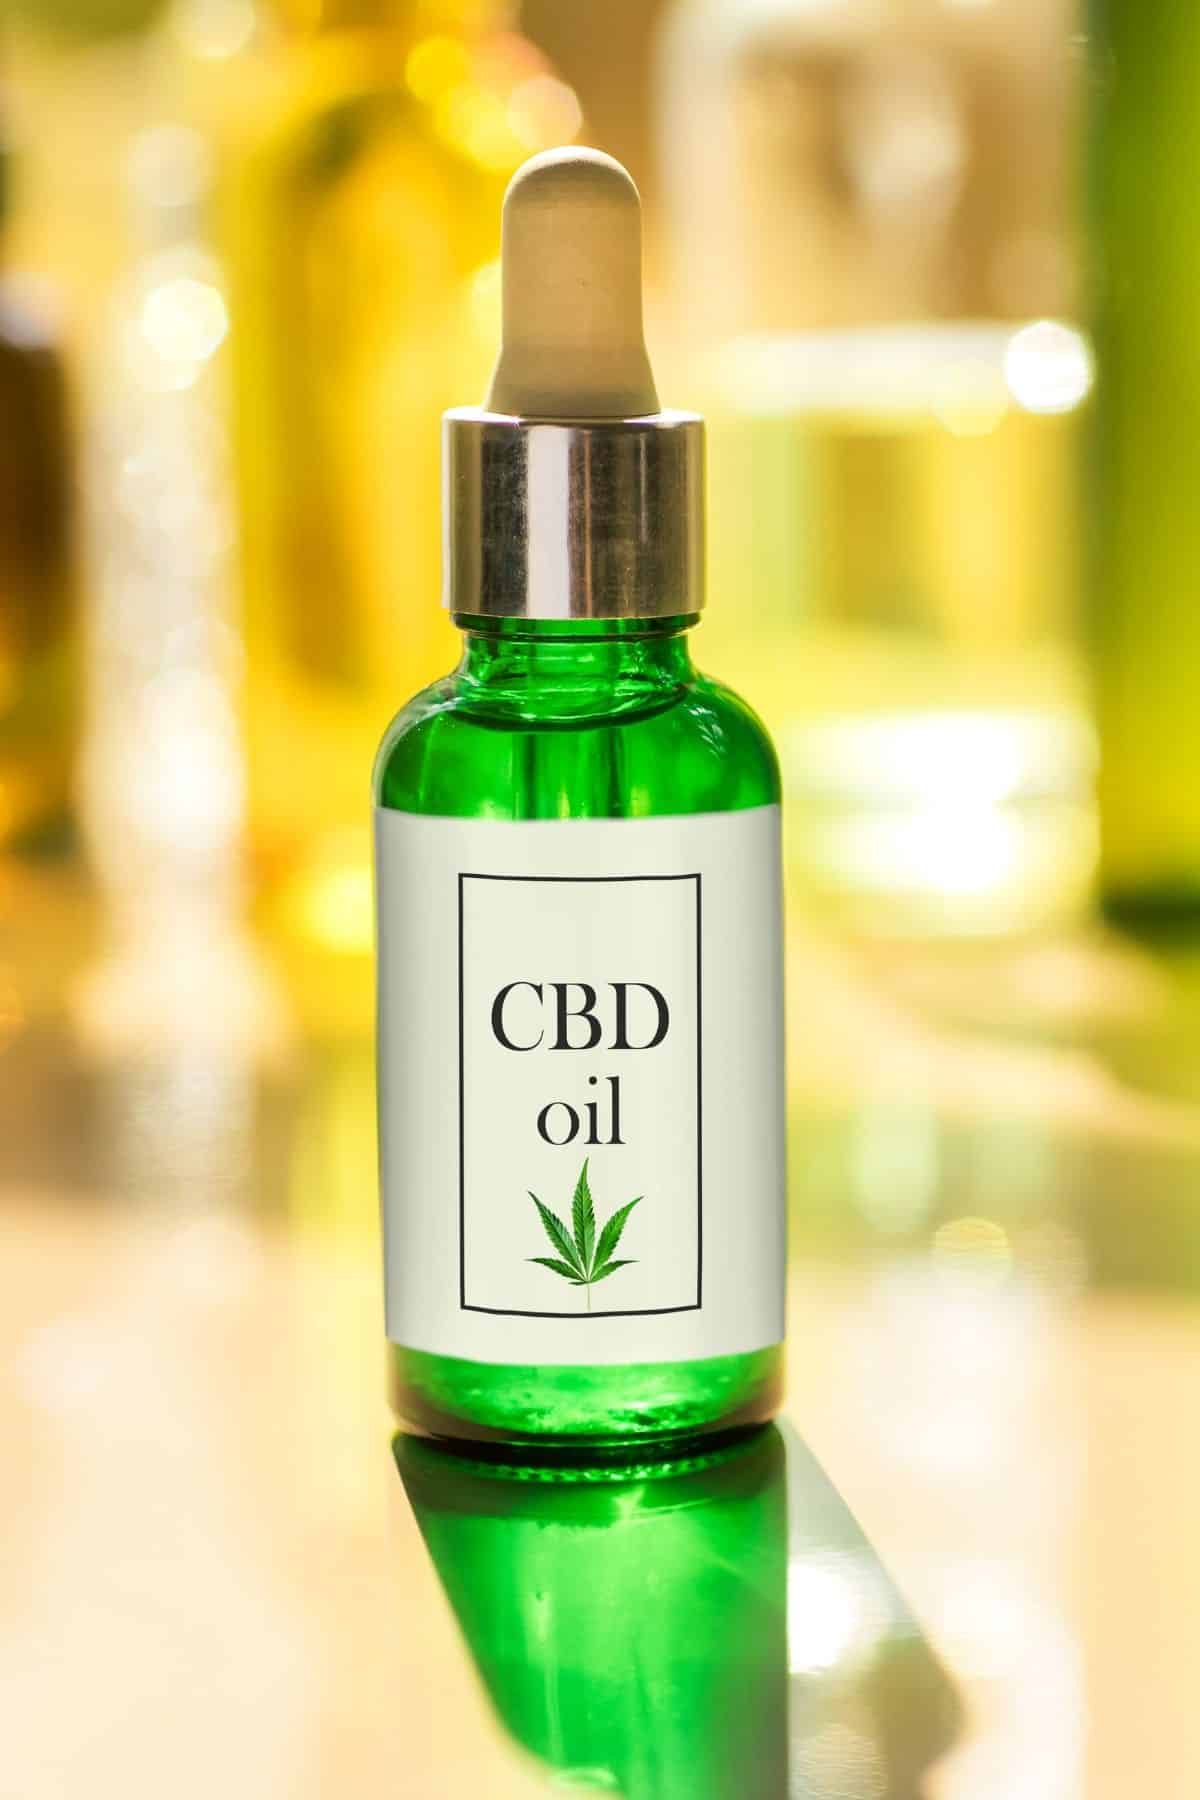 bottle of CBD oil in a green bottle